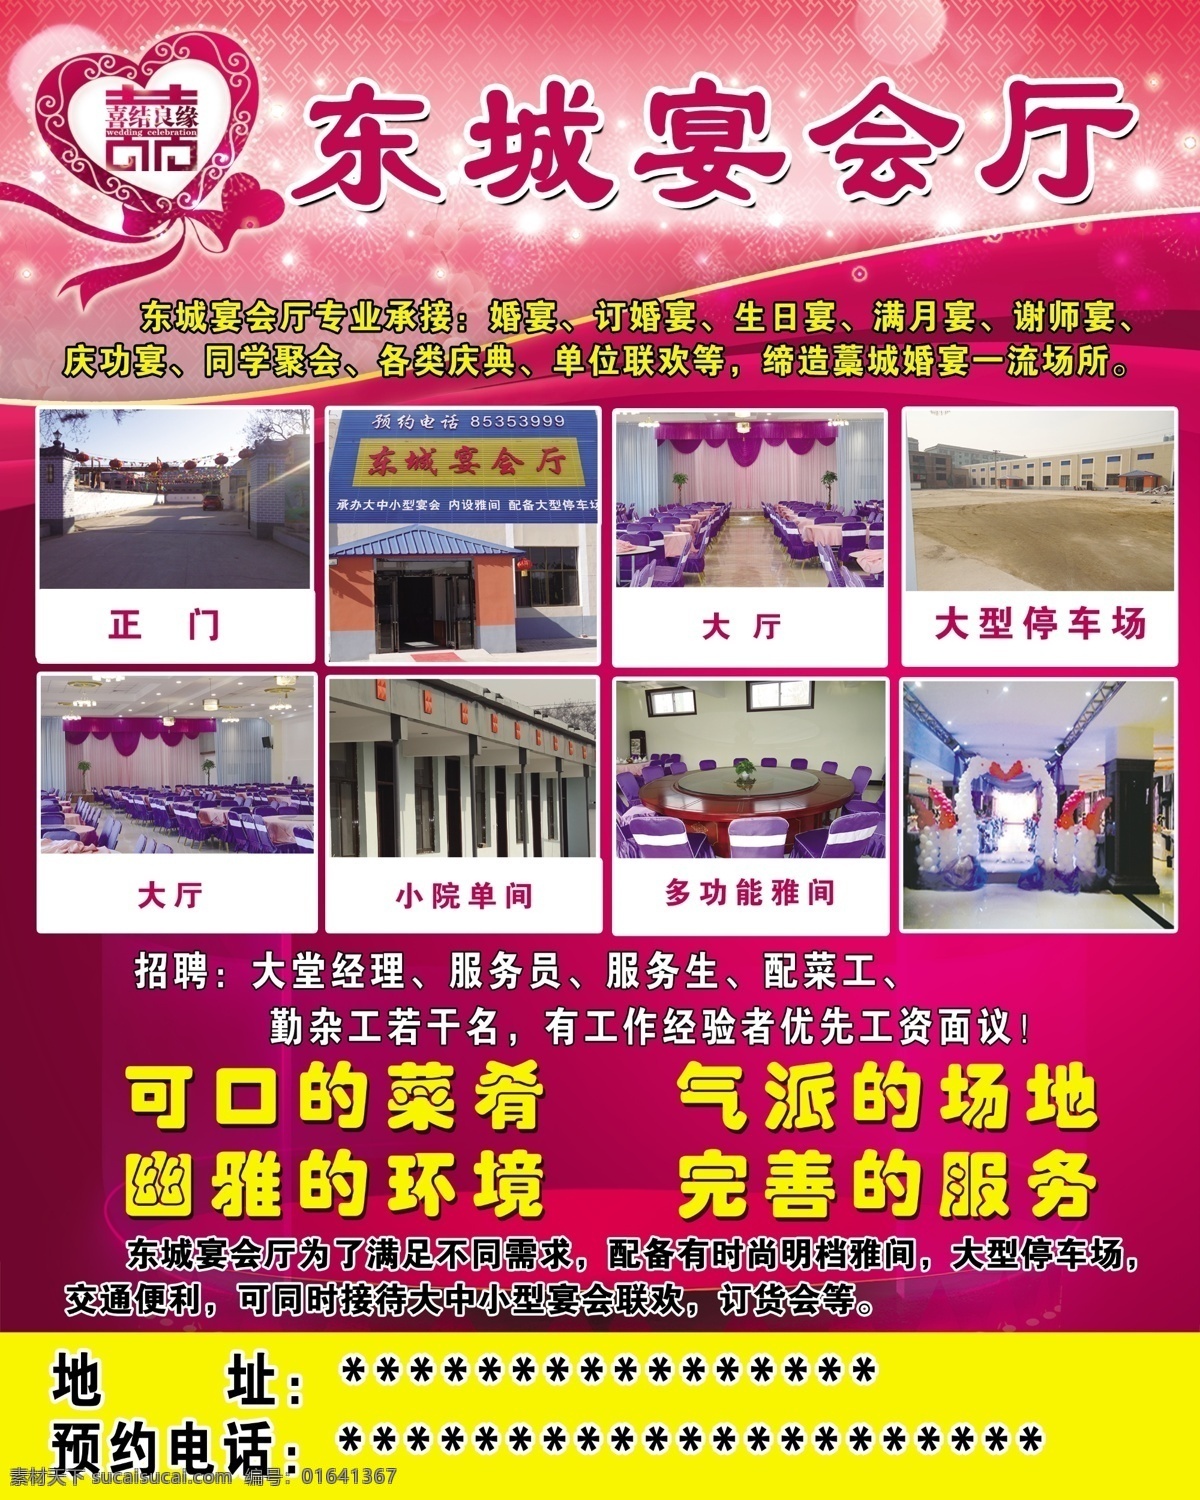 宴会厅 饭店 东城 东城宴会厅 婚礼 粉色 展板模板 紫色